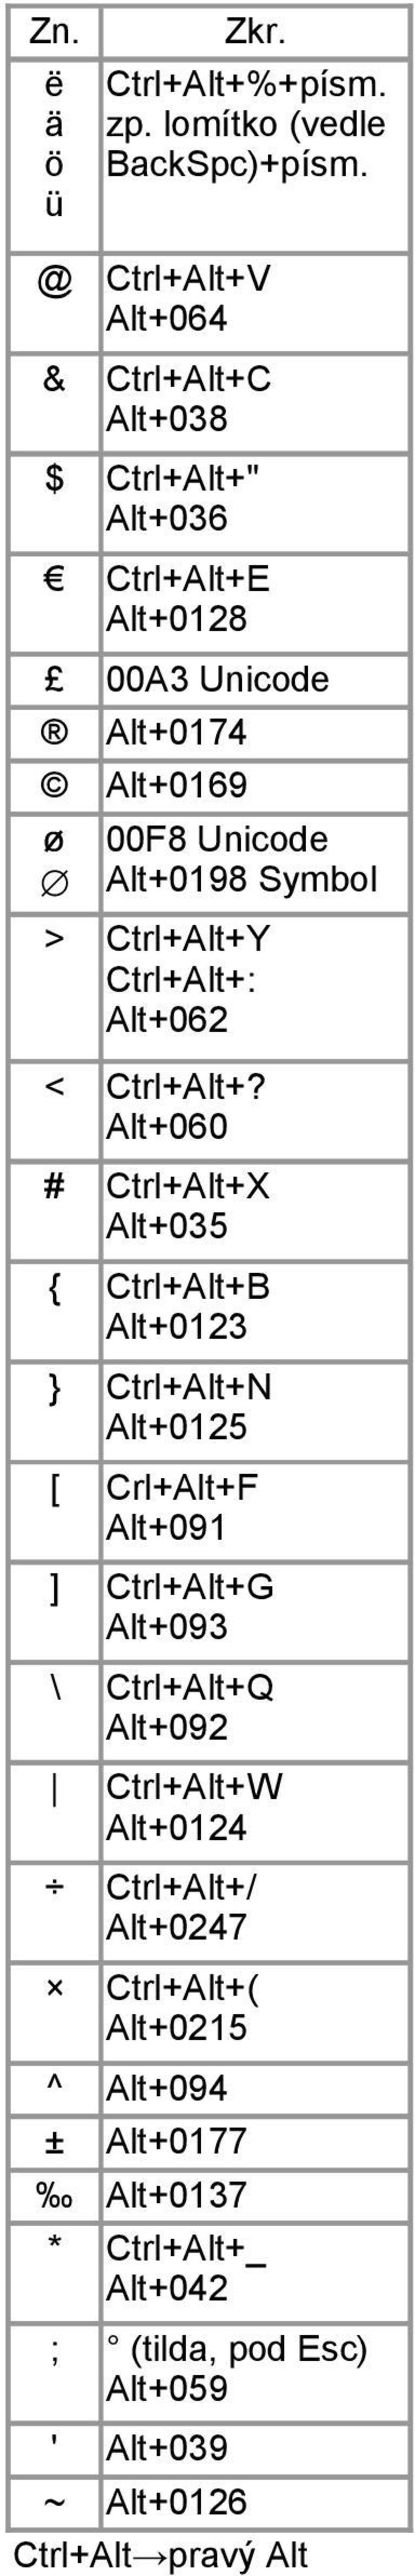 Ctrl+Alt+V Alt+064 Ctrl+Alt+C Alt+038 Ctrl+Alt+" Alt+036 Ctrl+Alt+E Alt+0128 00F8 Unicode Alt+0198 Symbol Ctrl+Alt+Y Ctrl+Alt+: Alt+062